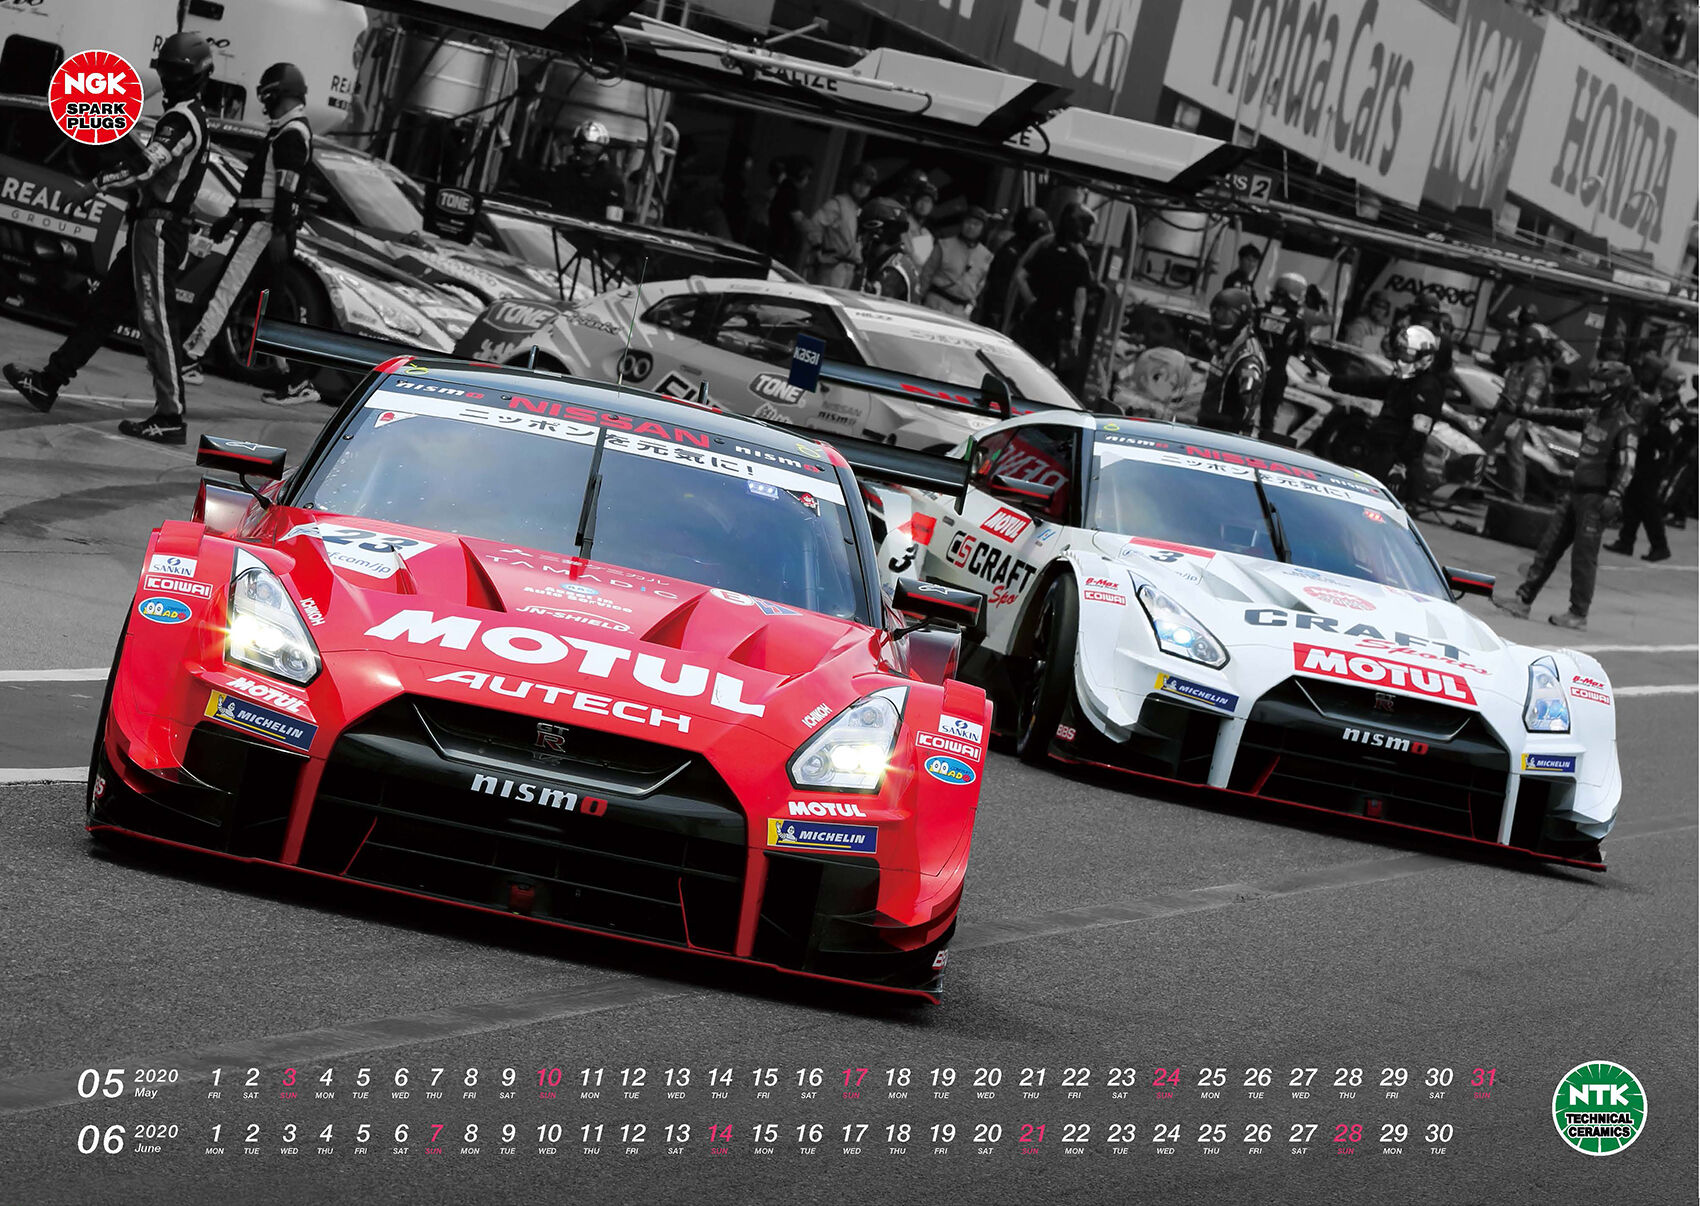 　日本特殊陶業（NGK）が制作した2020年NGKモータースポーツカレンダーを5名にプレゼント。NGKはスパークプラグの開発・提供を通じてモータースポーツ活動をサポートしています。現在はF1をはじめ、WRC（世界ラリー選手権）、インディ・シリーズ、スーパーGT、スーパーフォーミュラなどトップカテゴリーで戦うマシンの勝利に貢献。プレゼントのカレンダーは非売品。カバーを含めて7枚構成で、サイズは445×593mm。